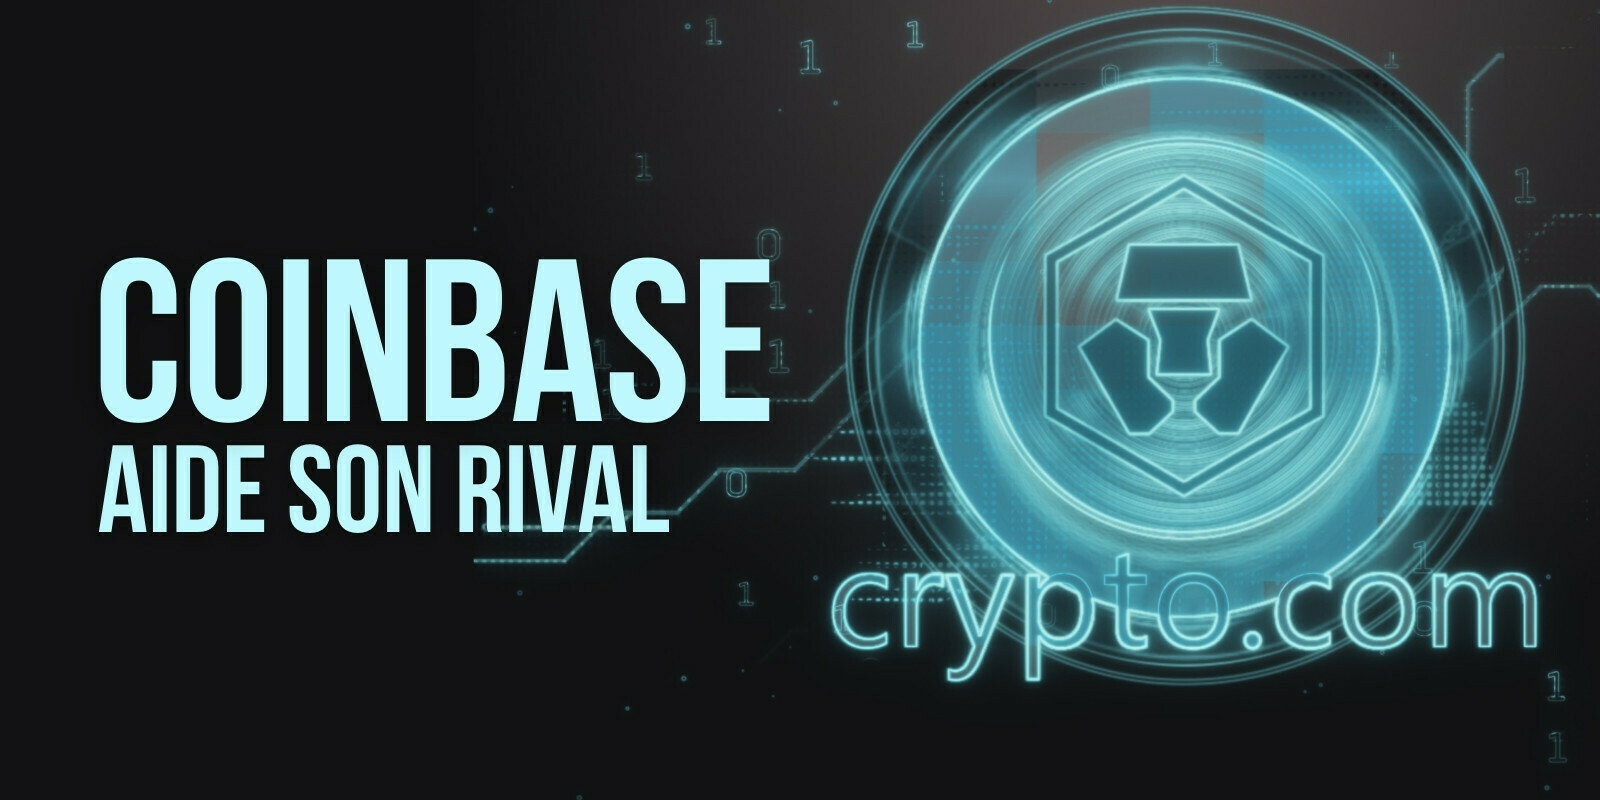 Le token CRO de Crypto.com atteint un record absolu suite à son ajout sur Coinbase